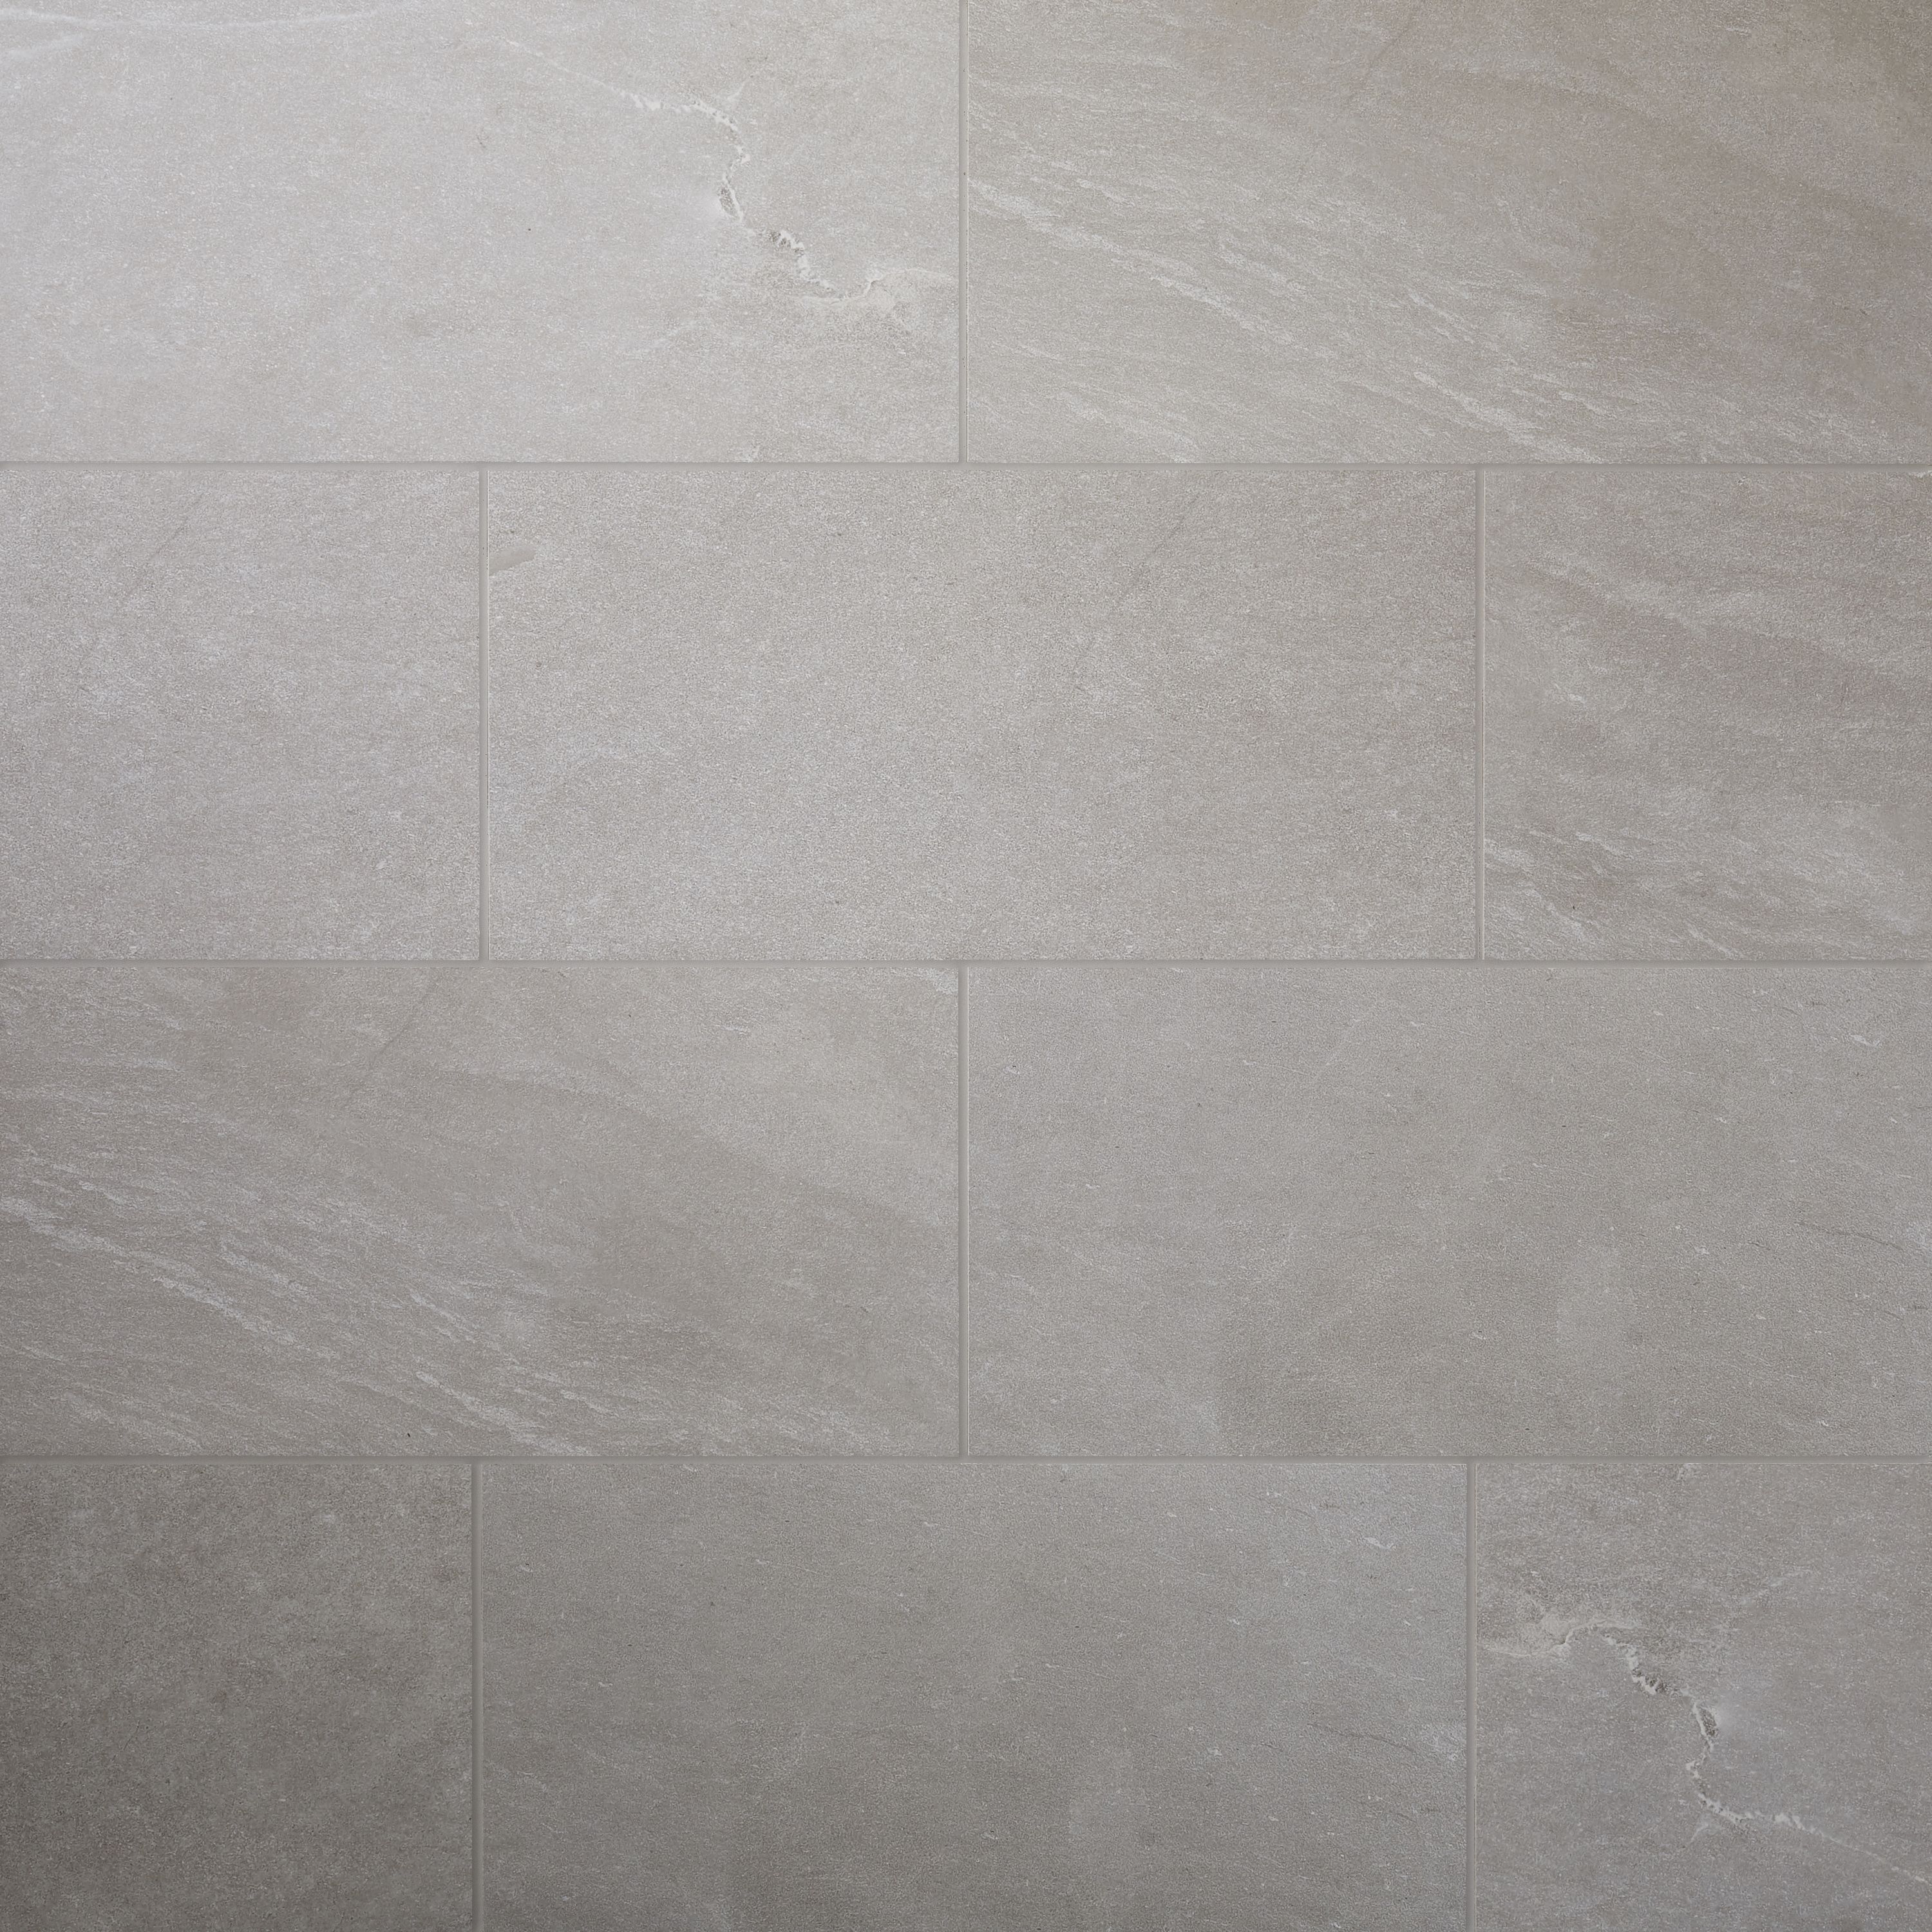 Slate Light grey Matt Flat Stone effect Porcelain Wall & floor Tile Sample